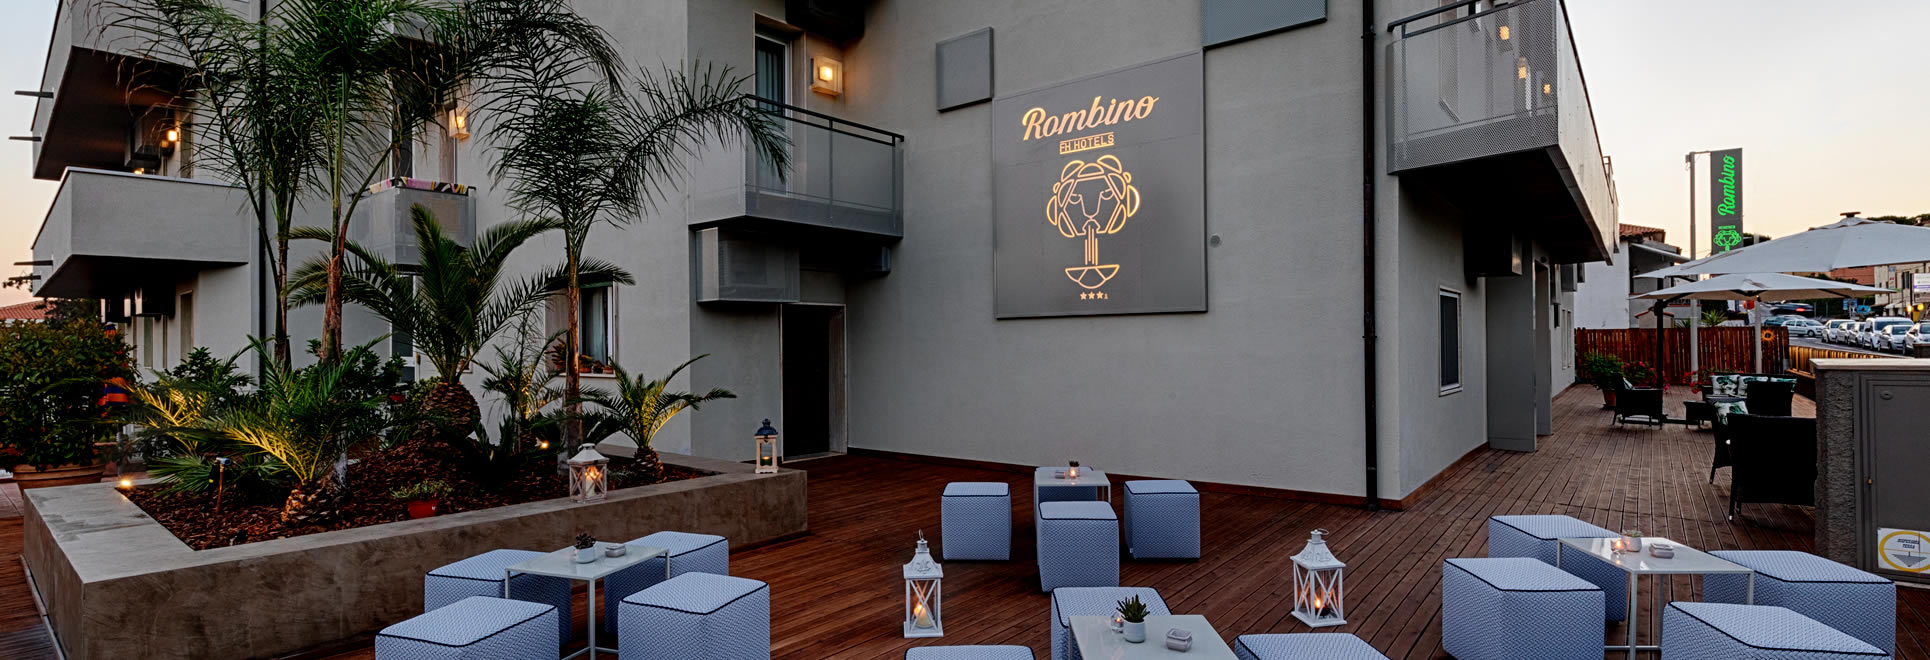 Hotel Rombino